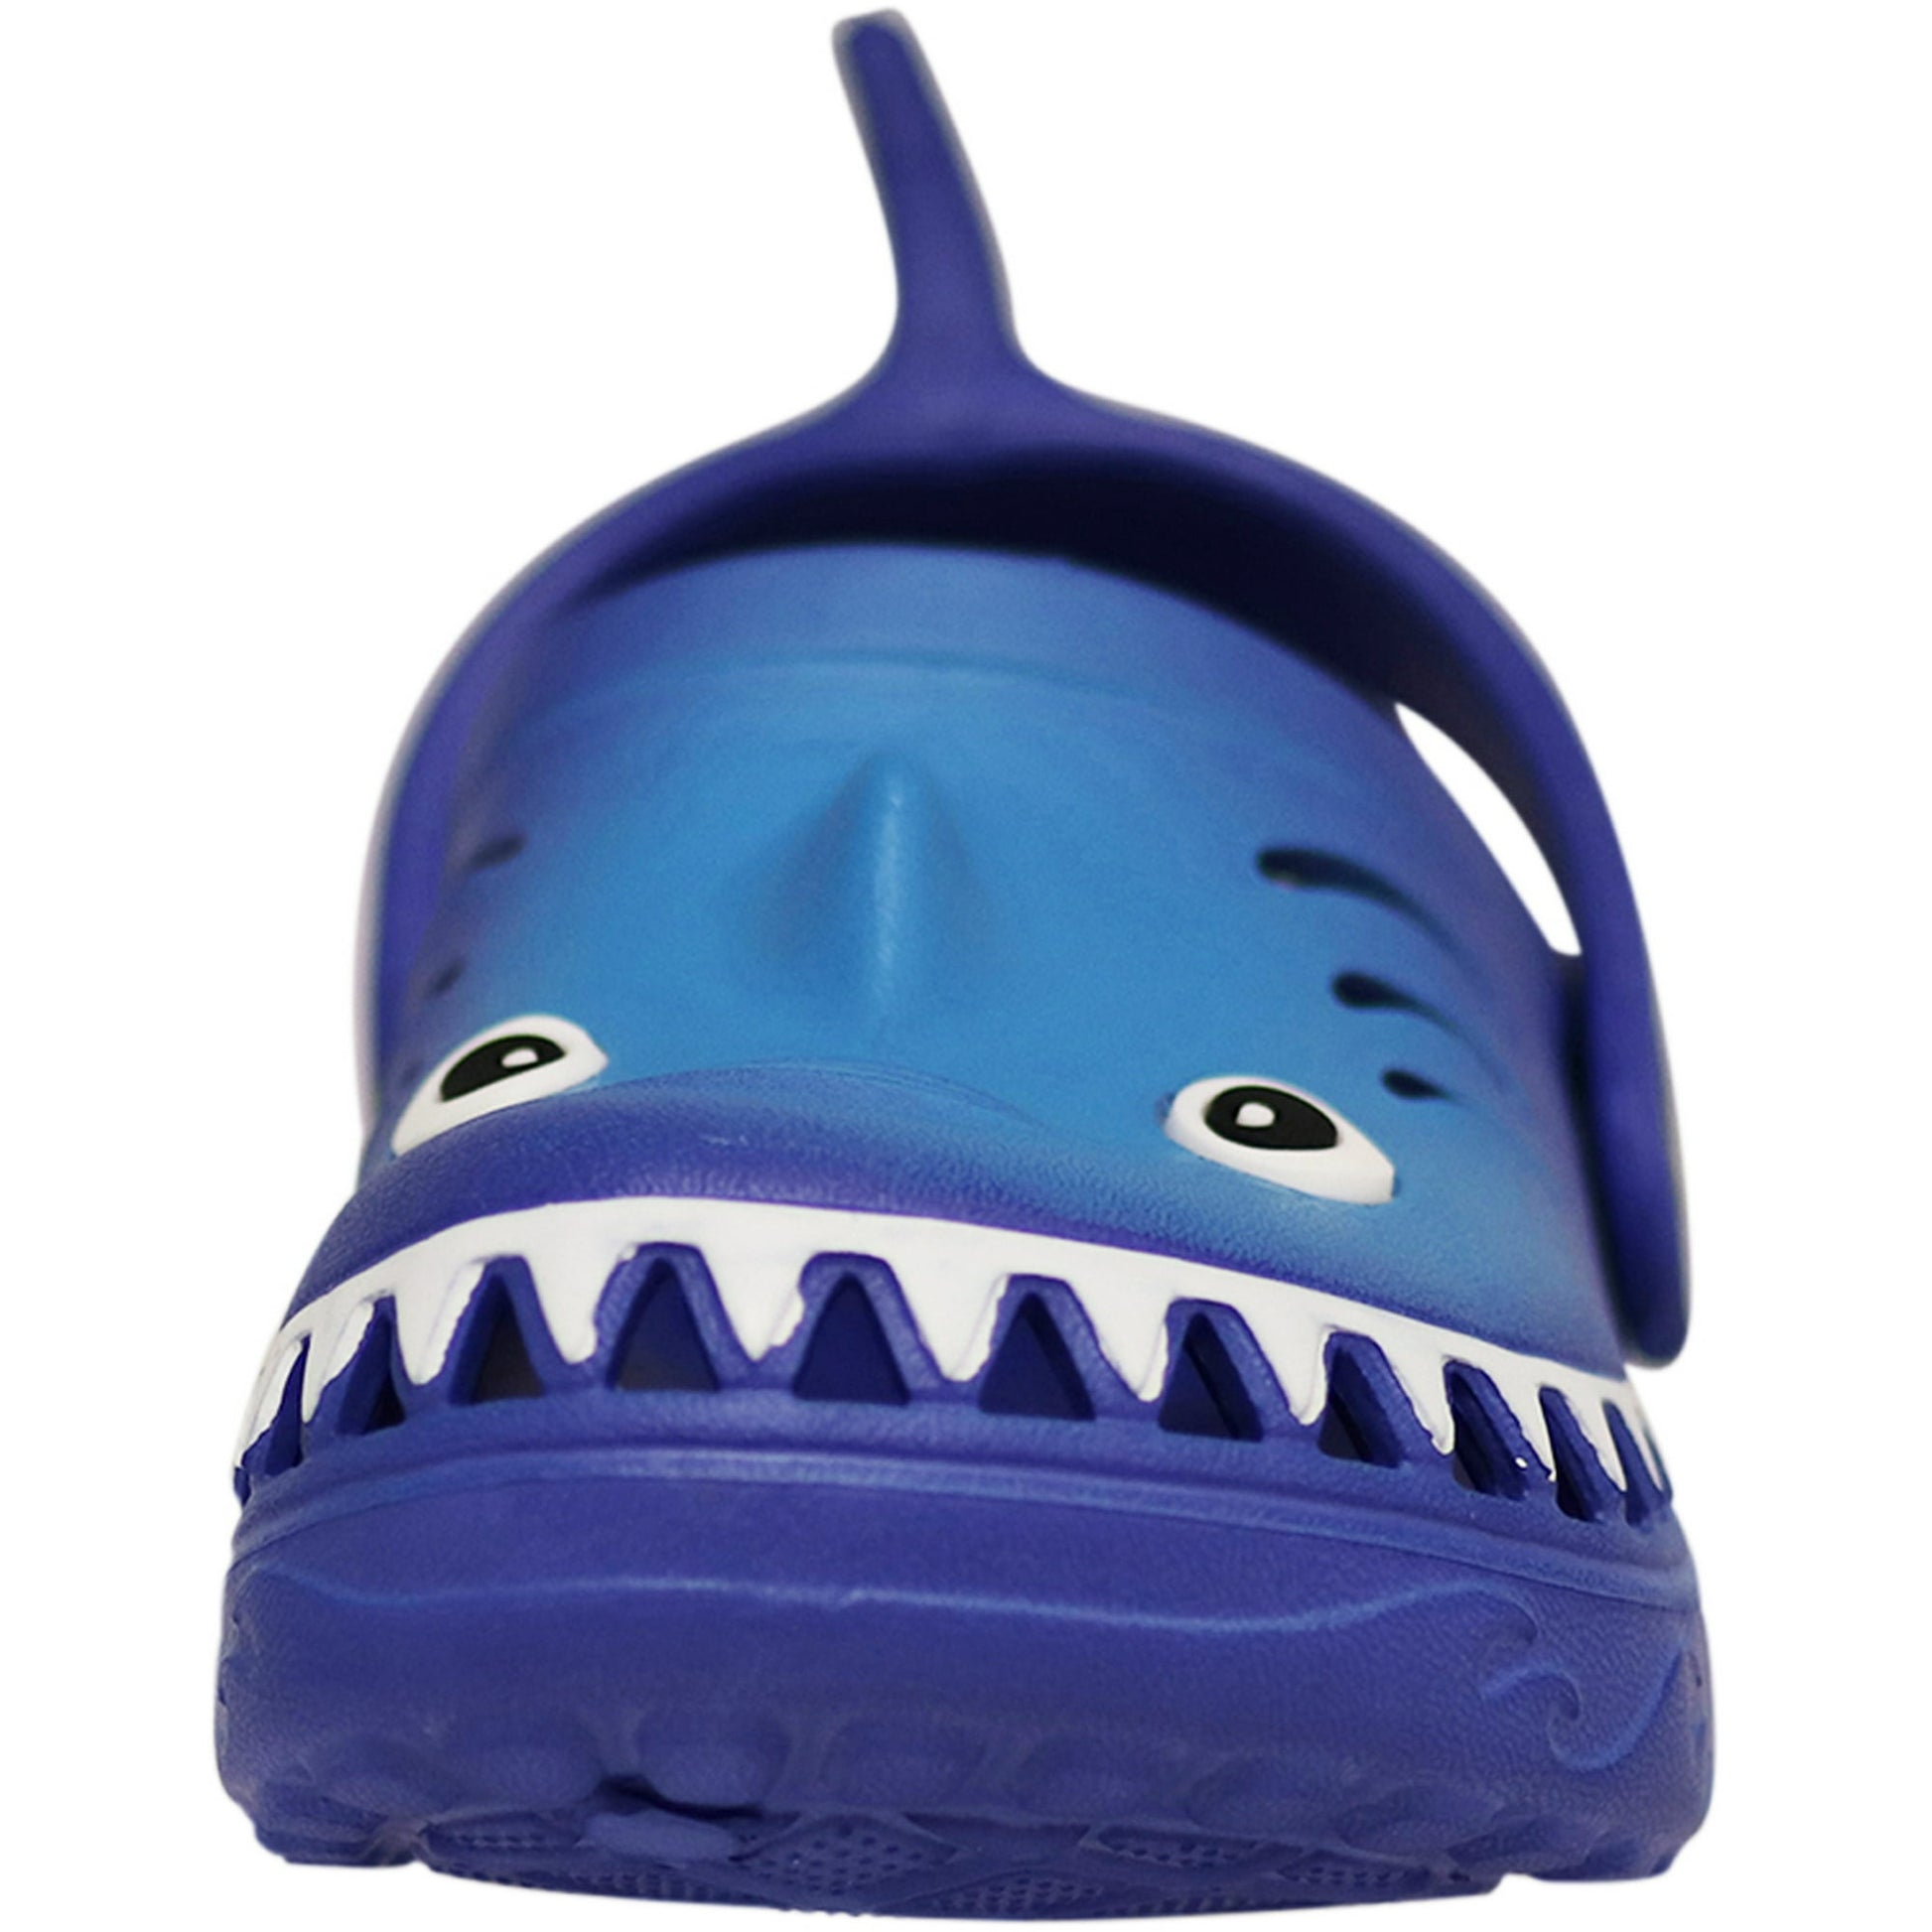 NORTY - Boy's Girl's Children Toddler Kid Fun Slip on Sandal Slipper Clog Shoe - Blue Shark (C1210)